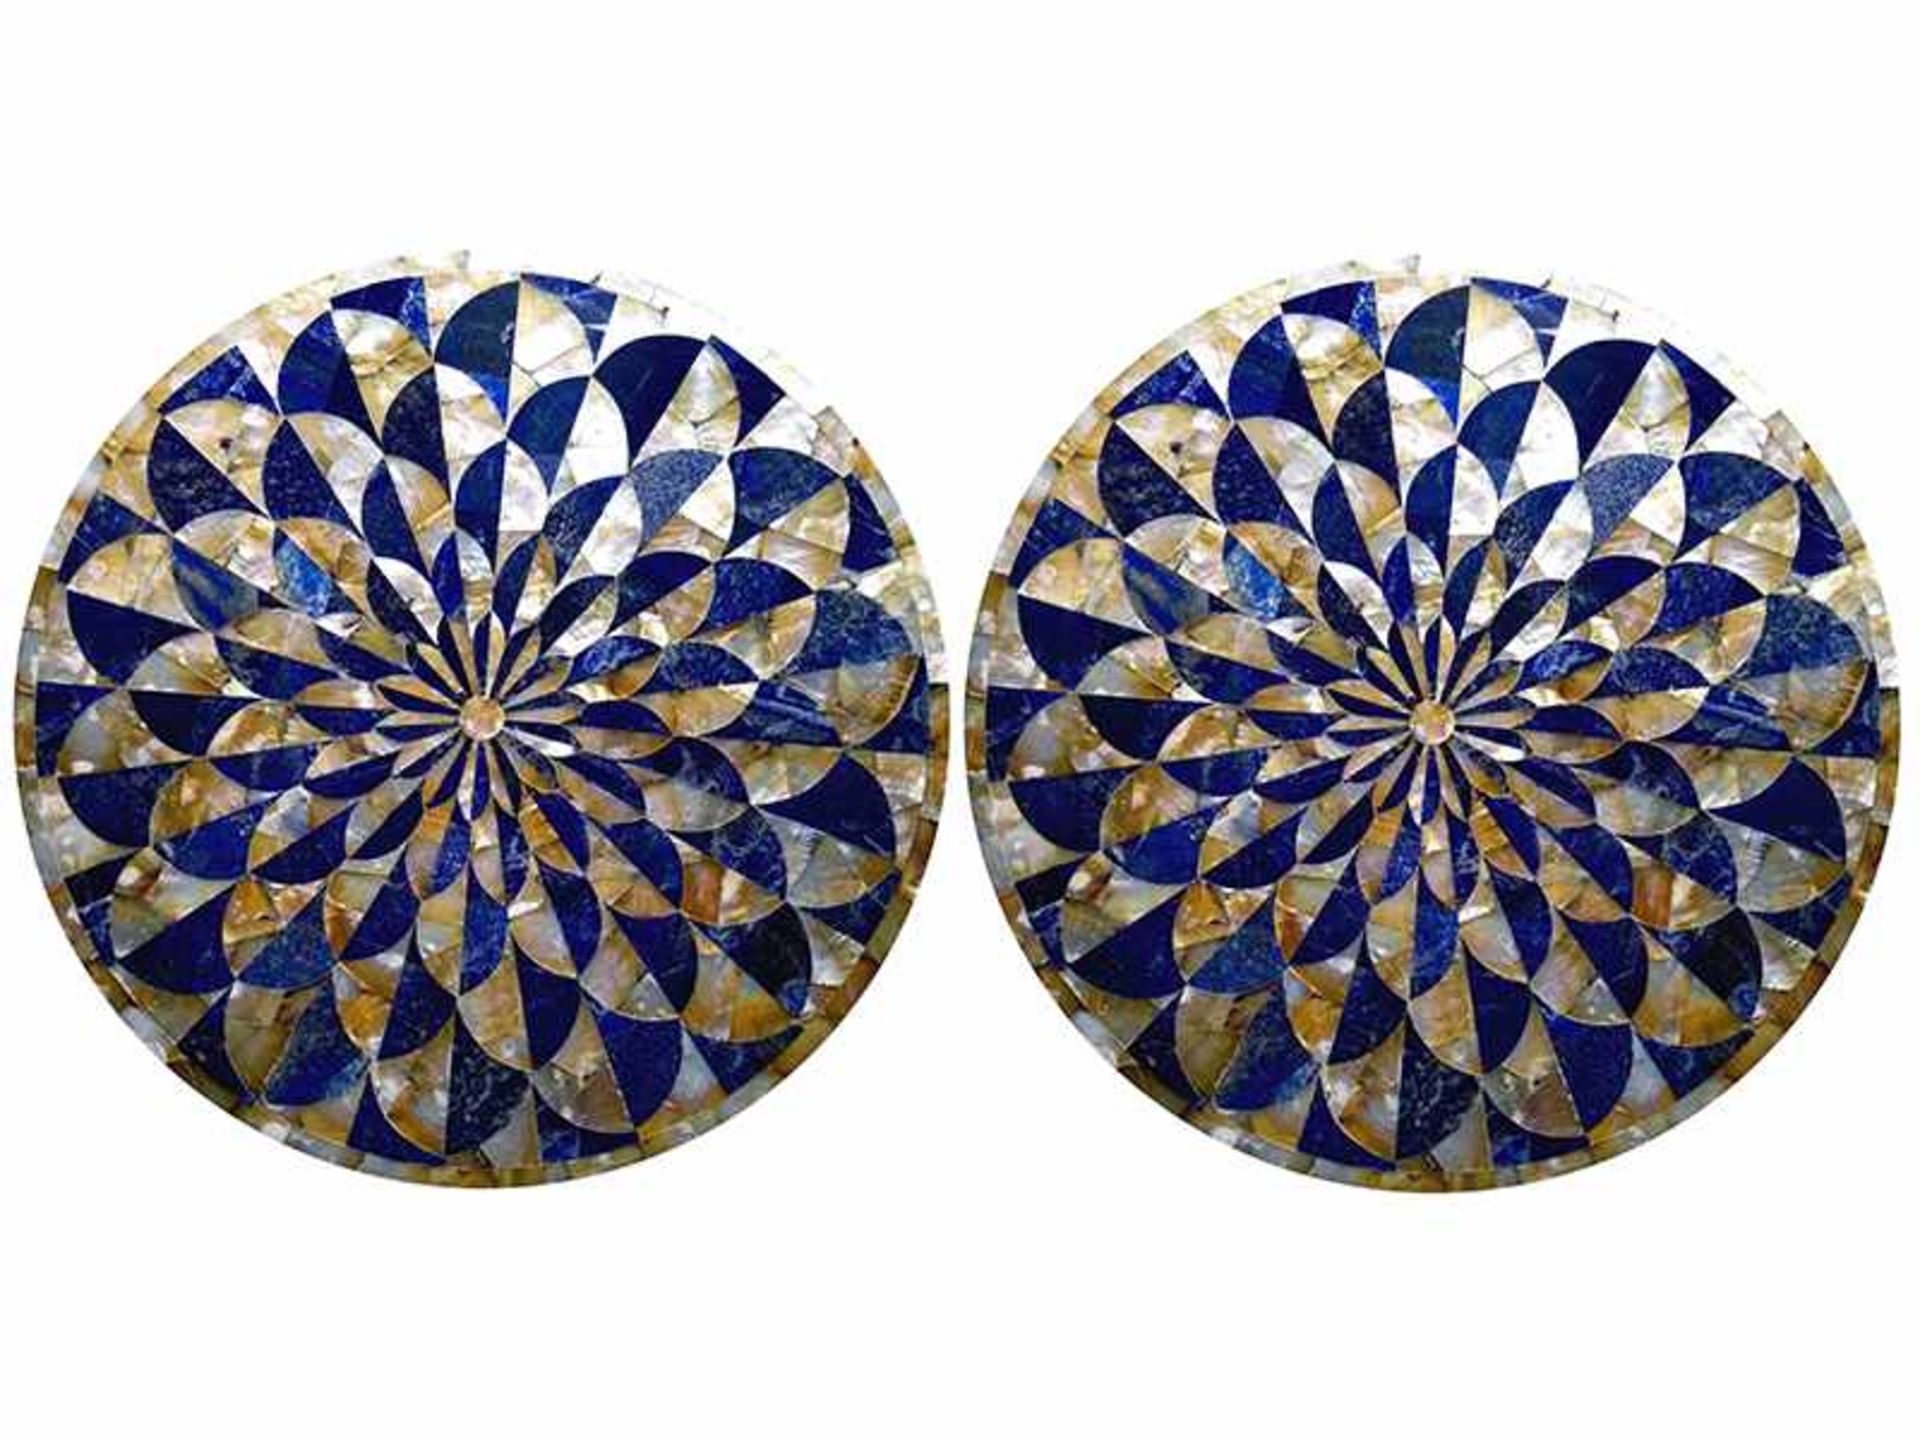 Pietra Dura-Tondi Durchmesser: 60 cm. Italien. In radialem Muster angelegte Pietra Dura-Platten